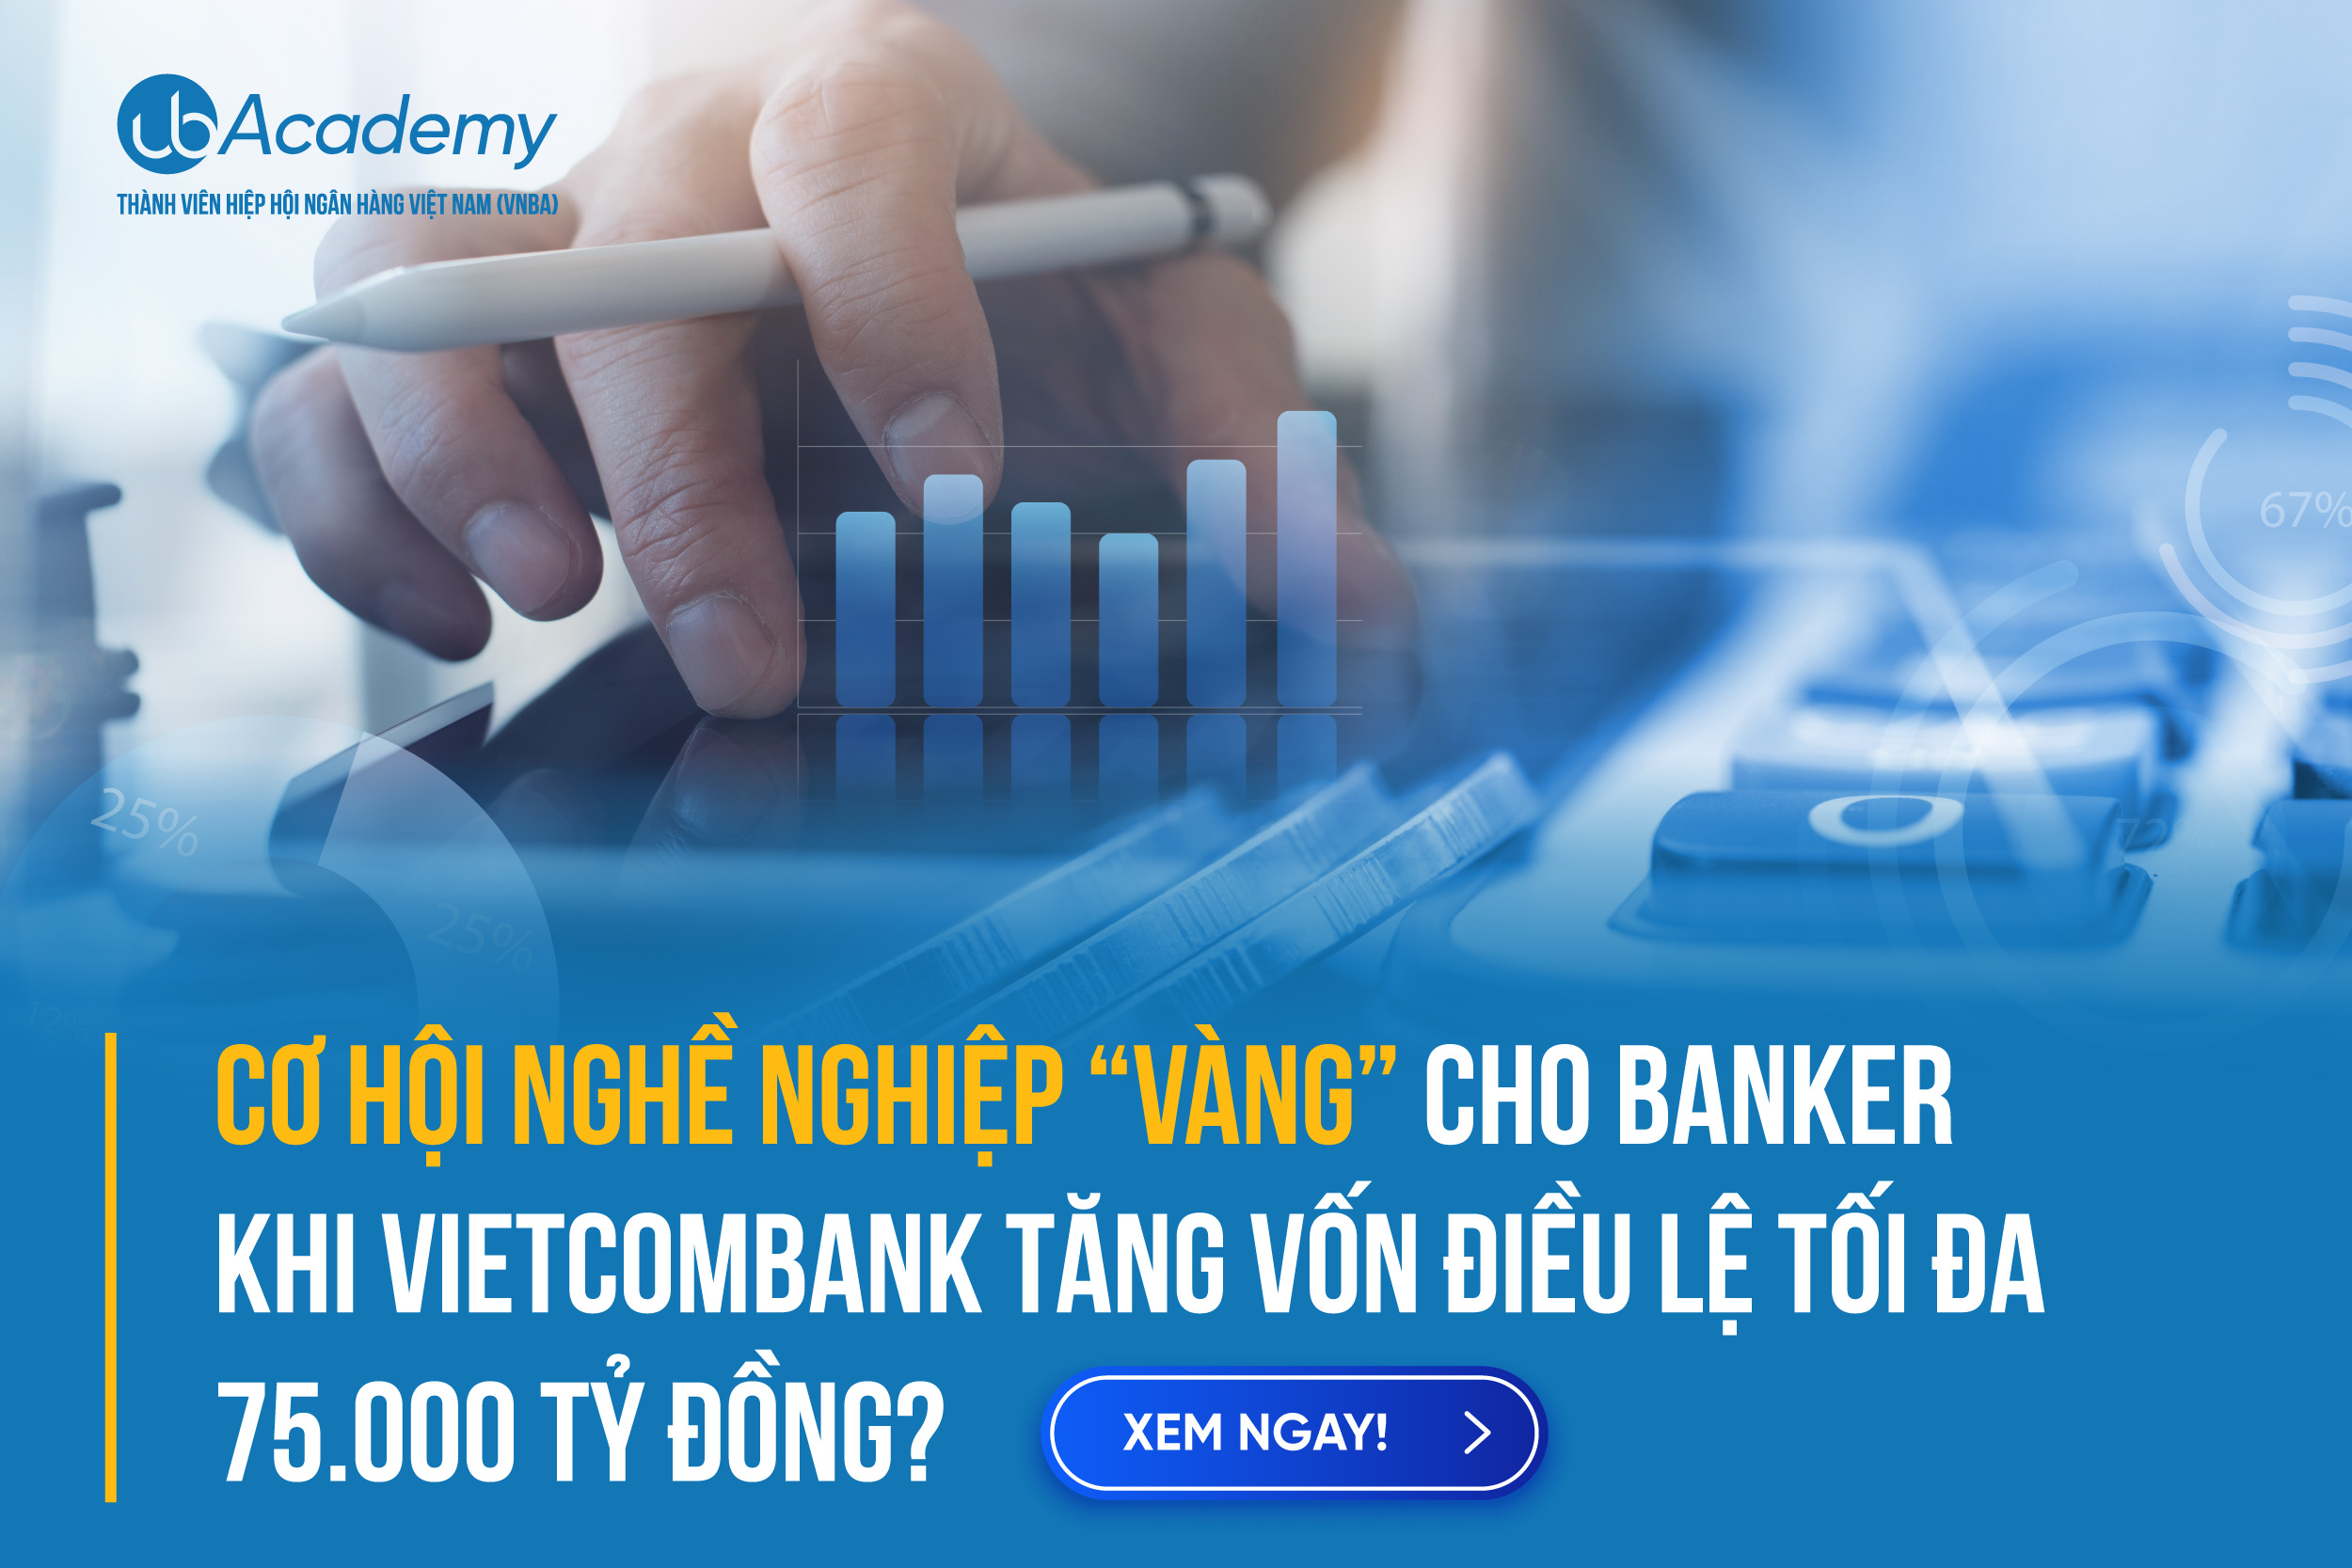 Cơ Hội Nghề Nghiệp “VÀNG” Cho Banker Khi Vietcombank Tăng Vốn Điều Lệ Tối Đa 75.000 Tỷ Đồng?